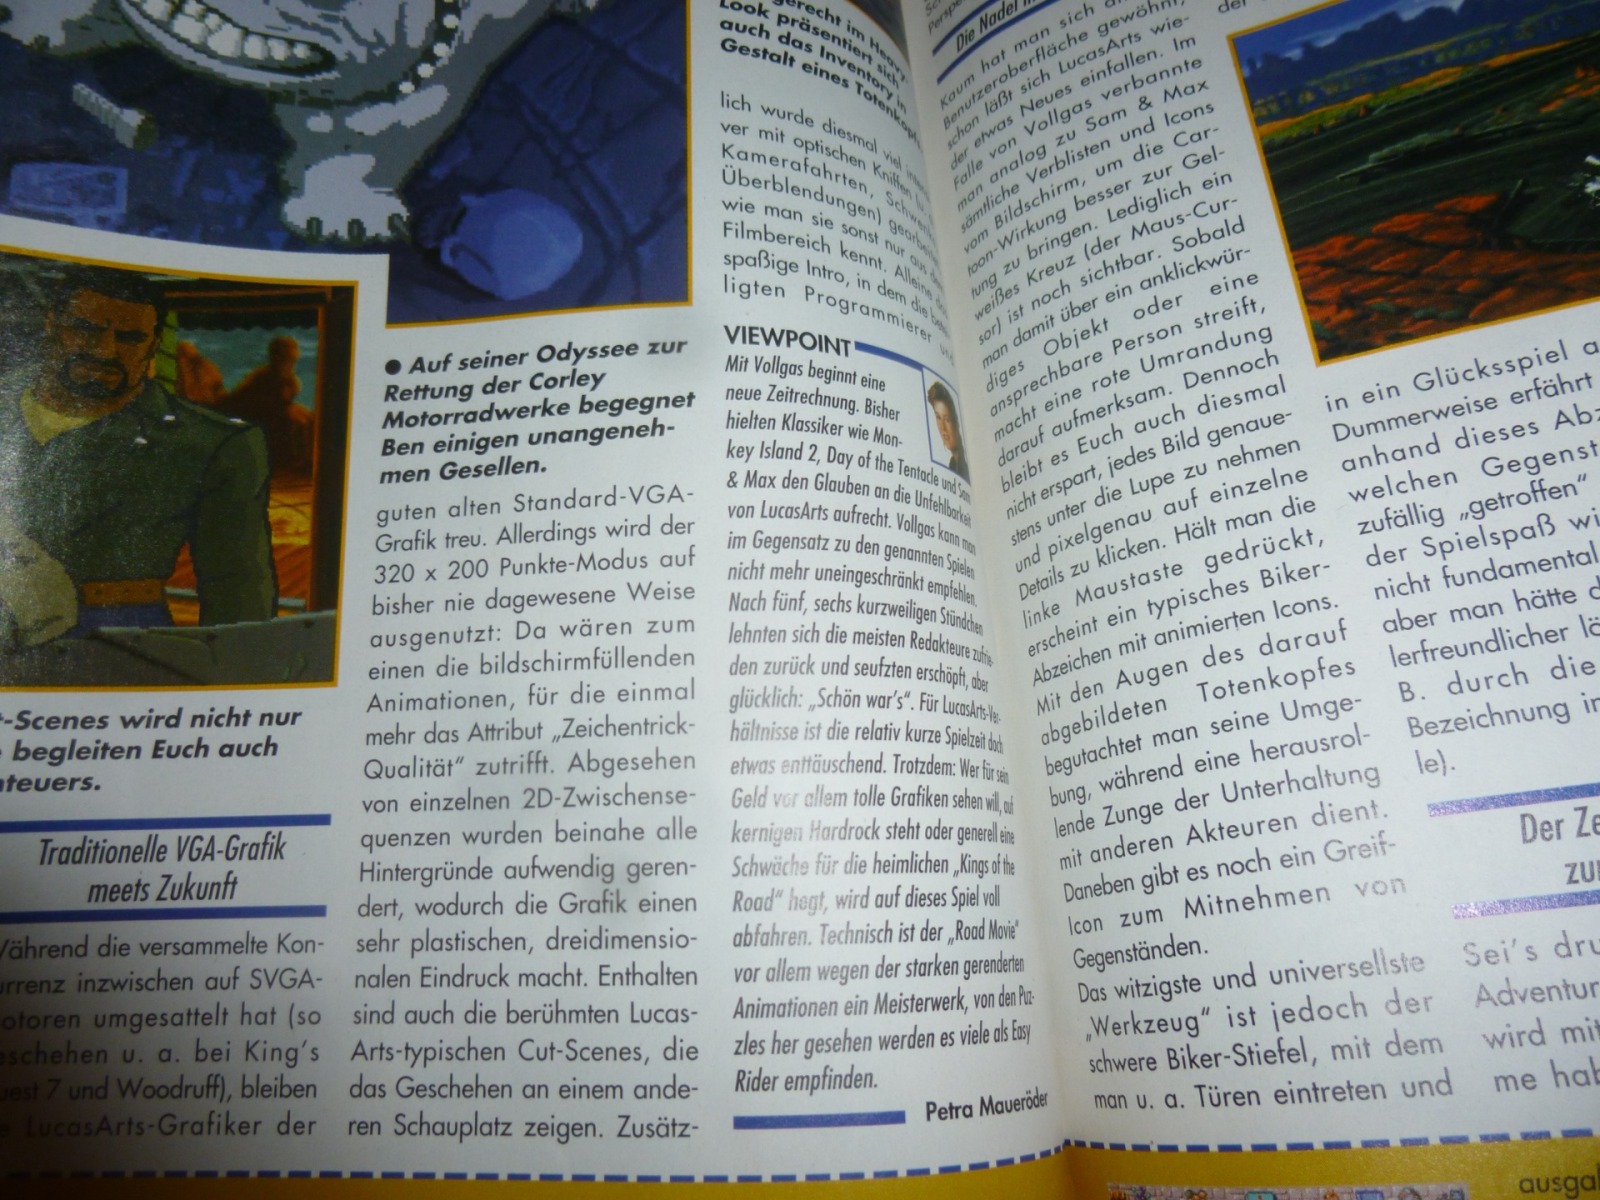 Play Time - Das Computer- und Videospiele-Magazin - Ausgabe 7/95 1995 7